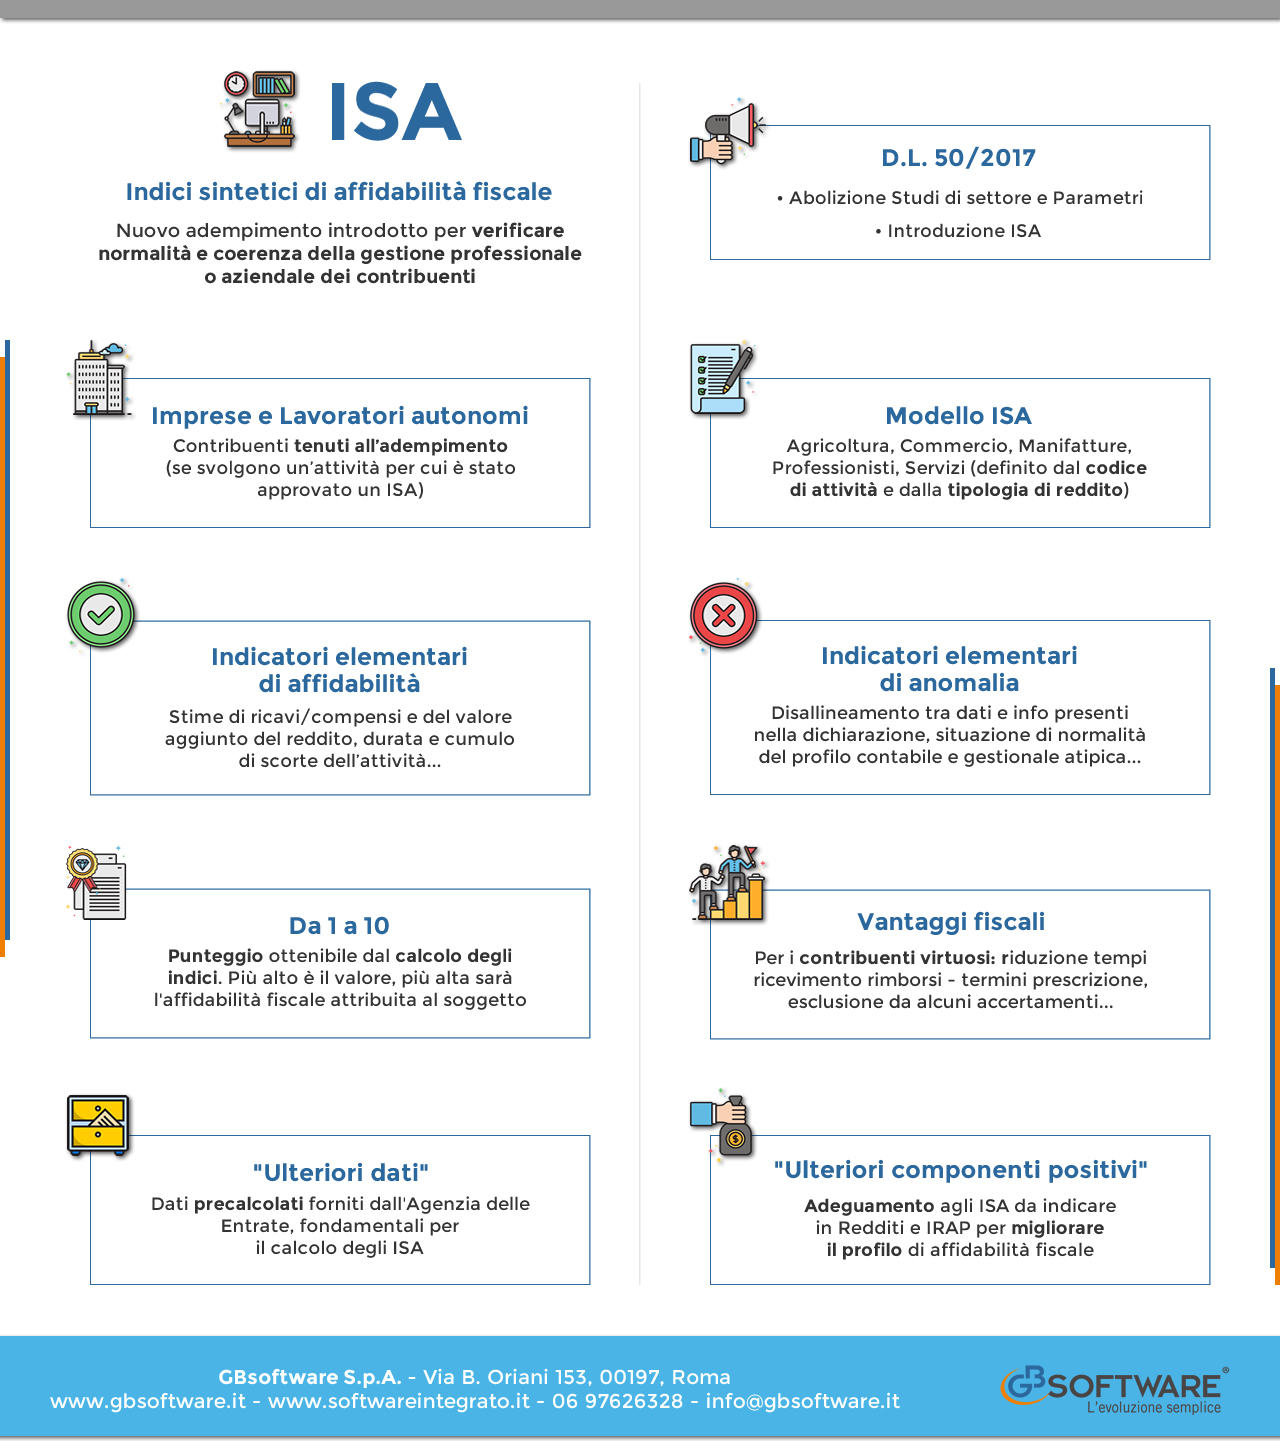 ISA in 9 punti - Infografica sugli Indici sintetici affidabilità fiscale